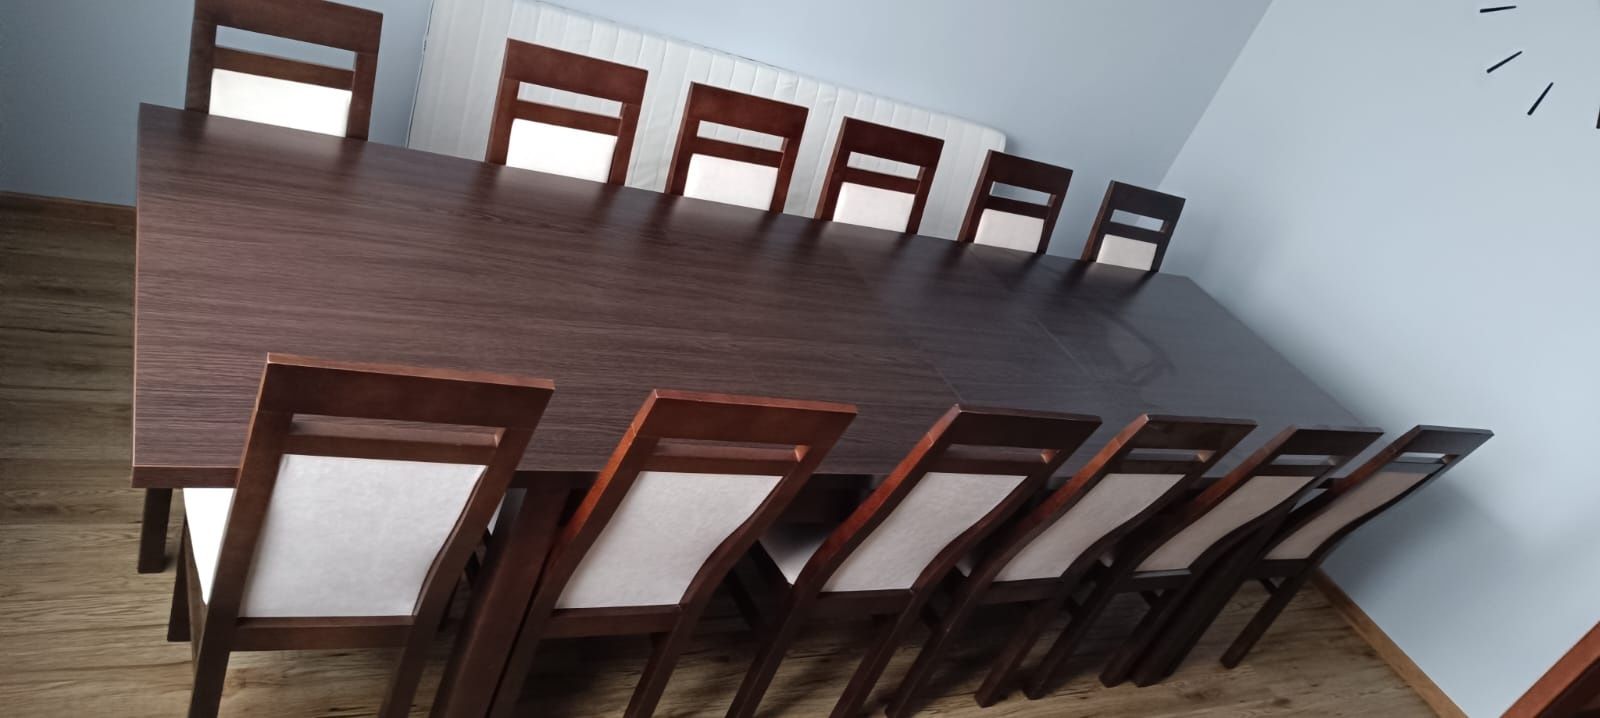 Stół dębowy fornir z krzesłami